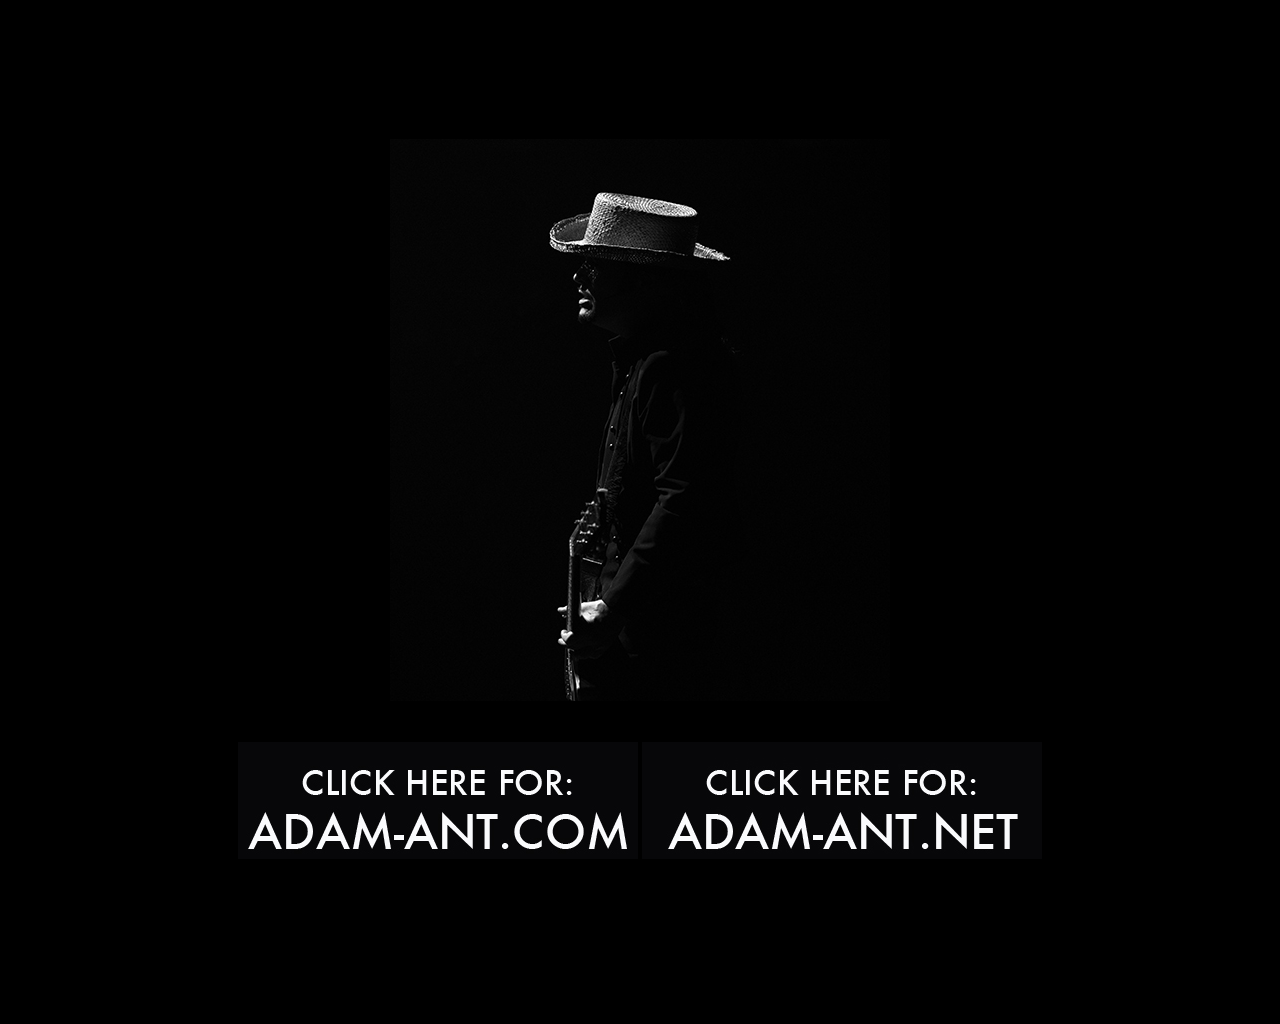 adam-ant.net